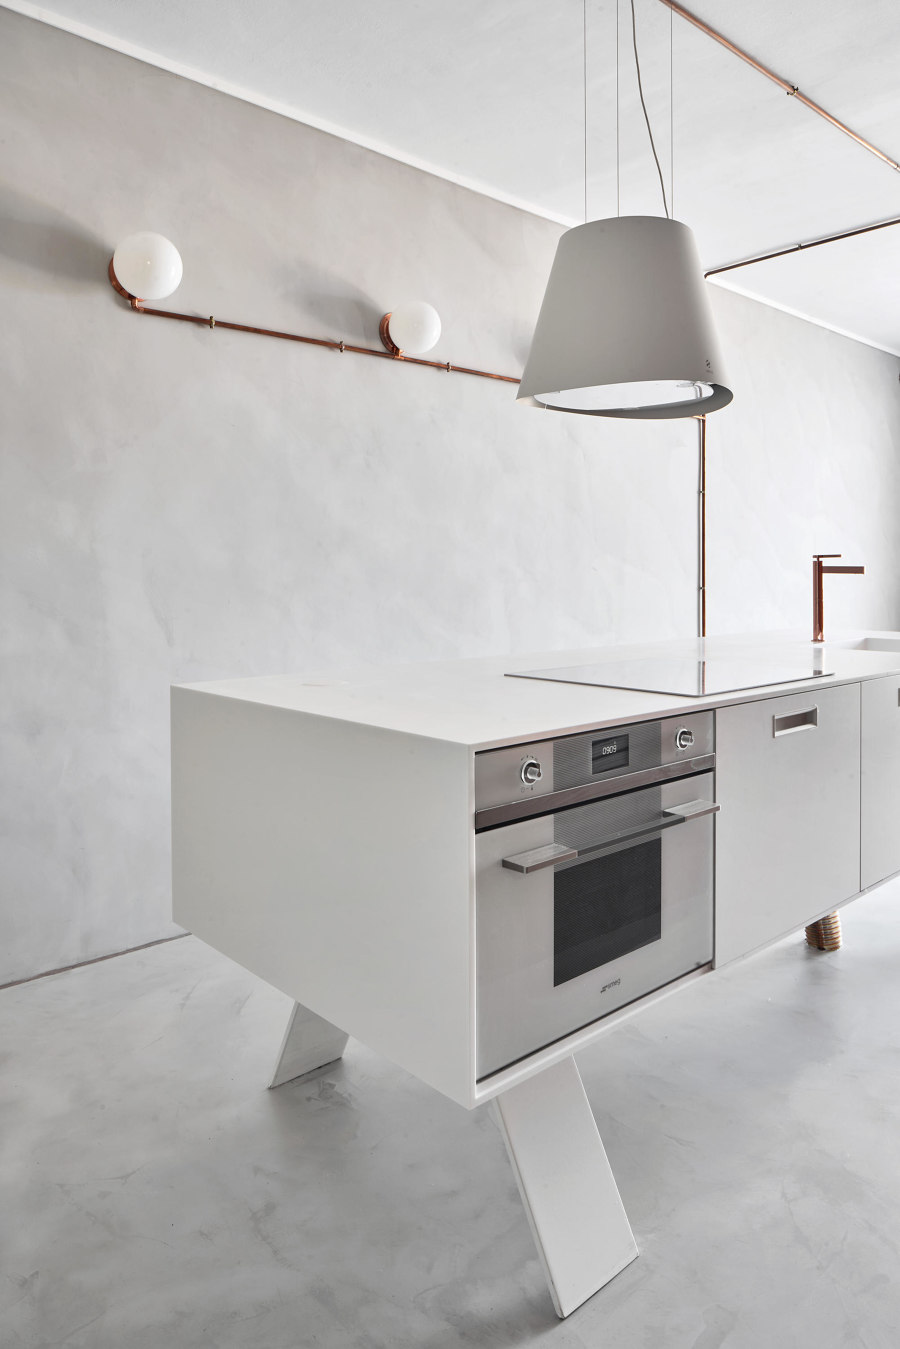 Island Life: kitchen spaces break out | Nouveautés